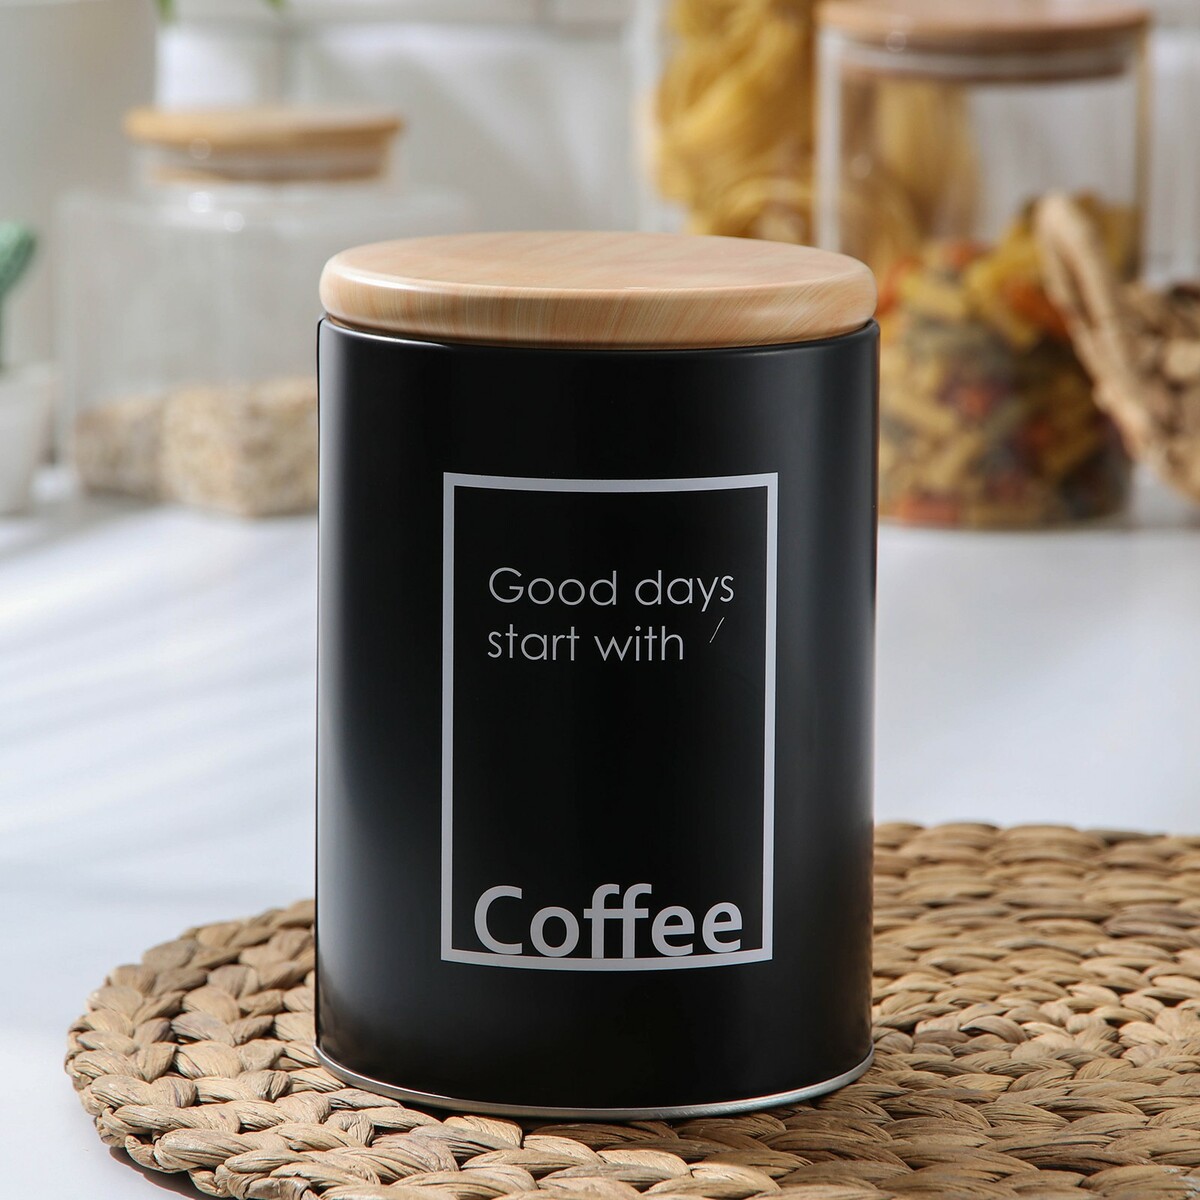 Банка для сыпучих продуктов кофе lifestyle, 11×15,5 см, цвет черный